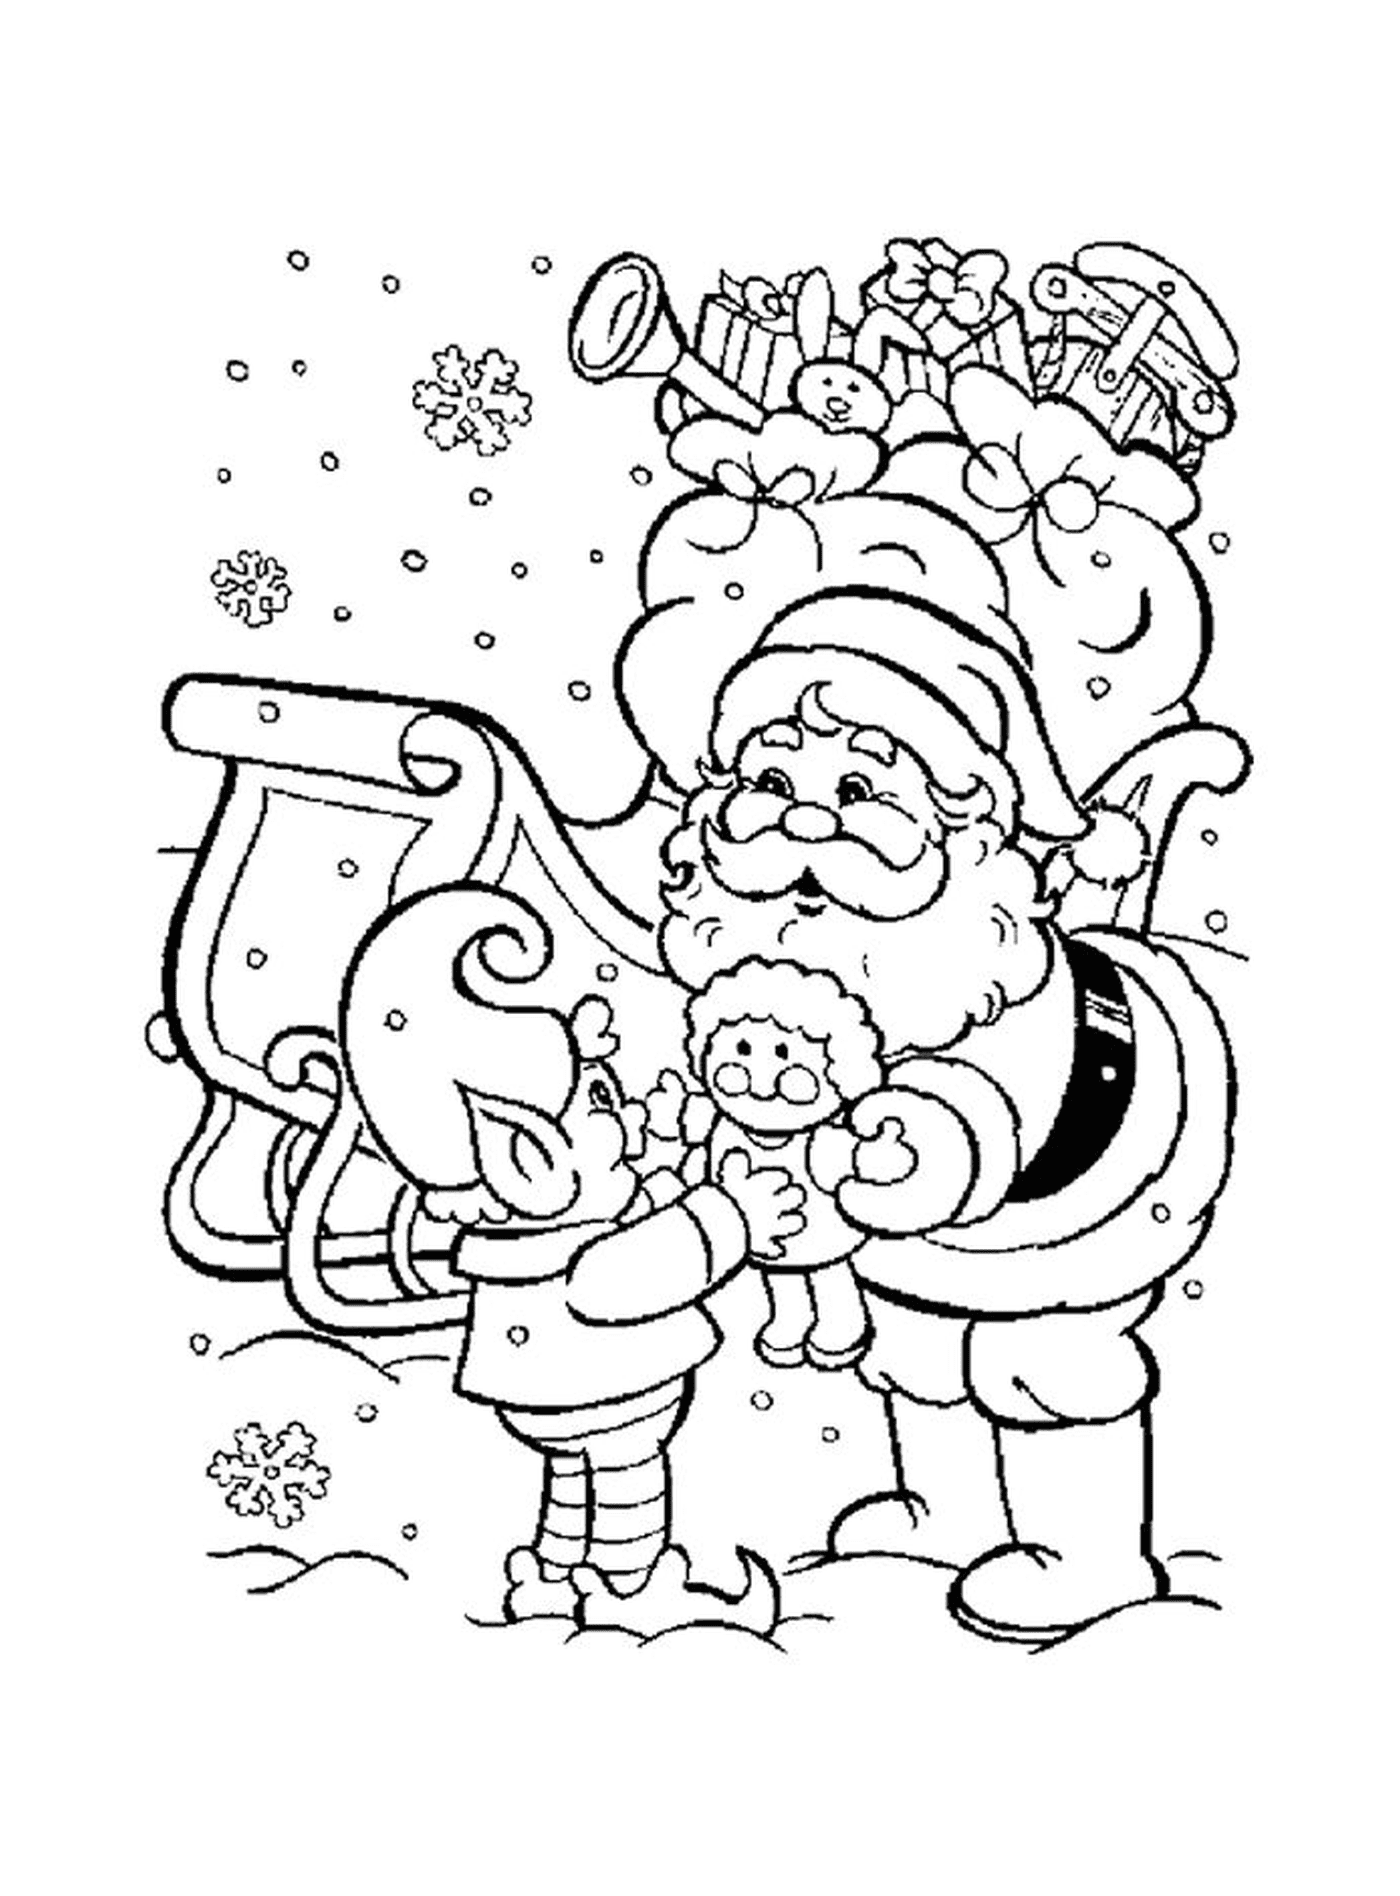  Santa with an elf 